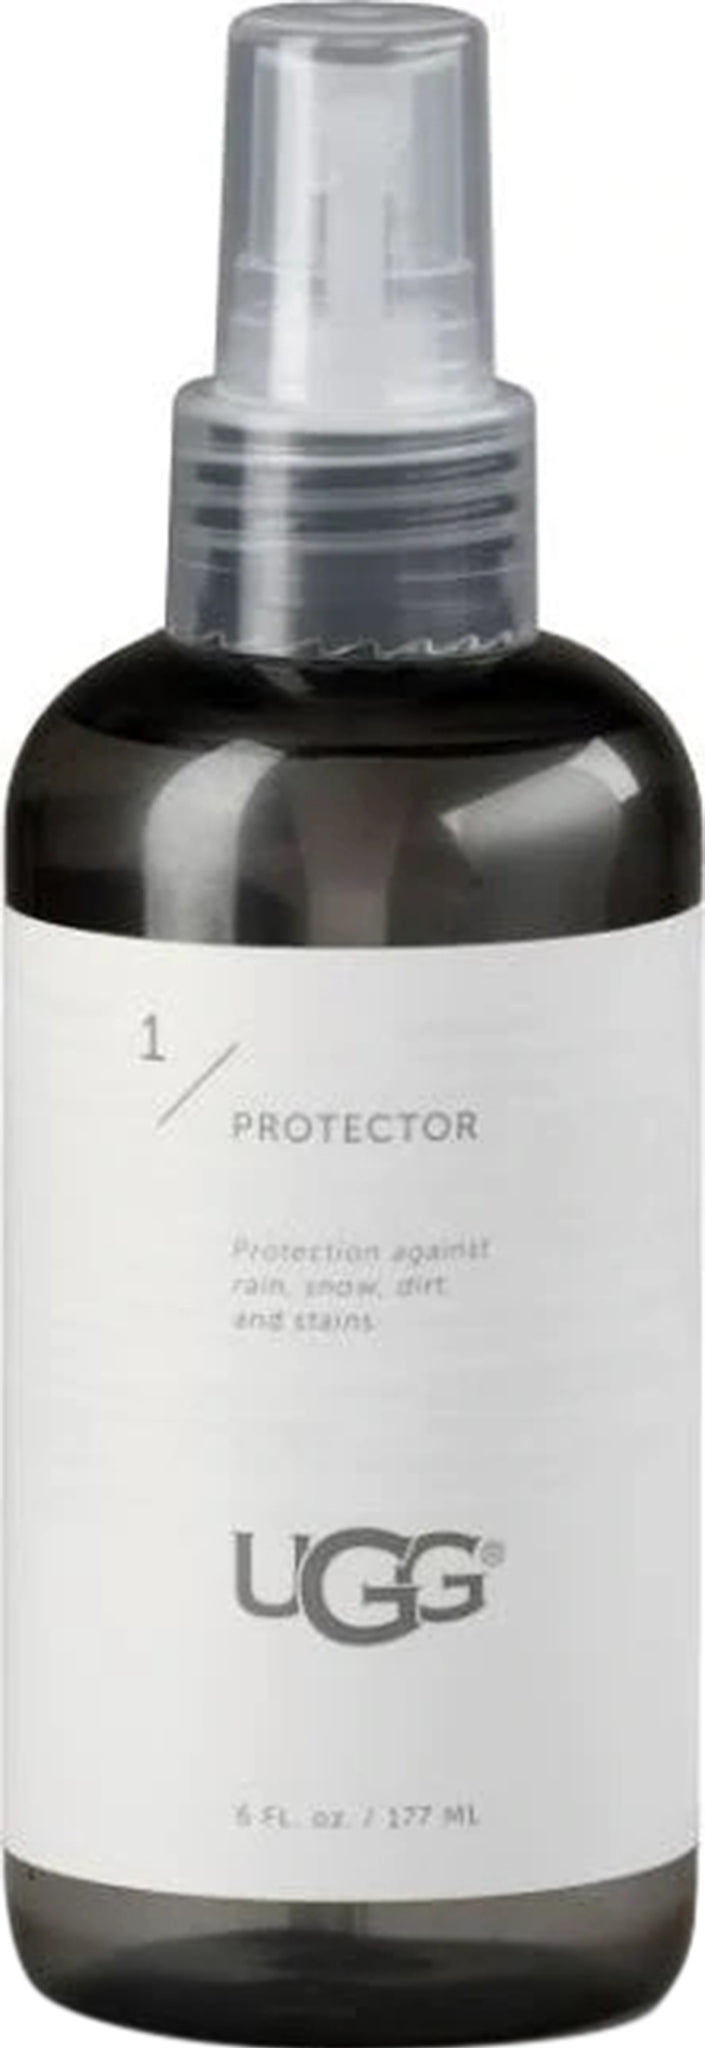 UGG® Protector Spray 